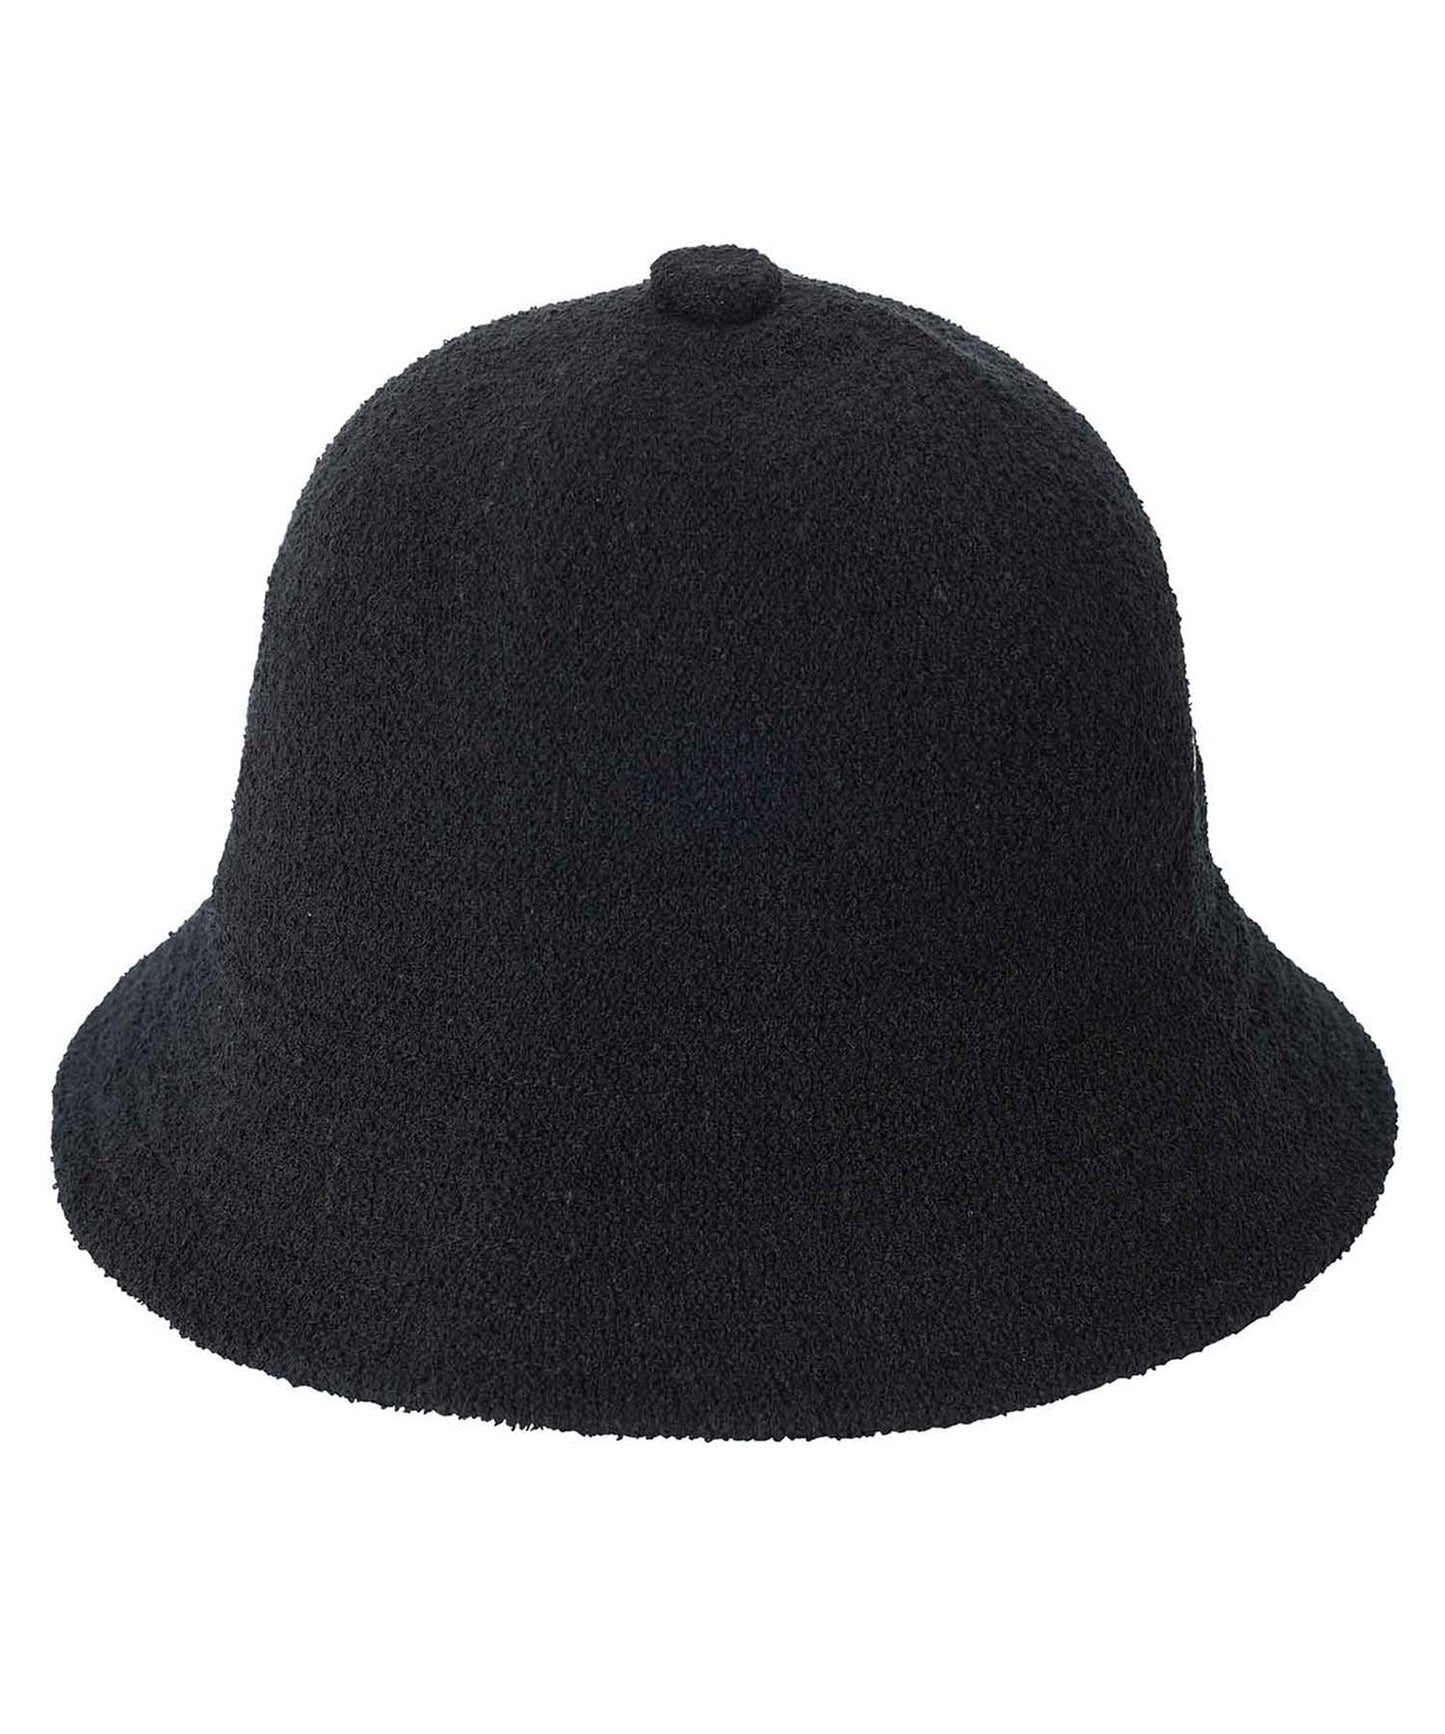 METRO HAT